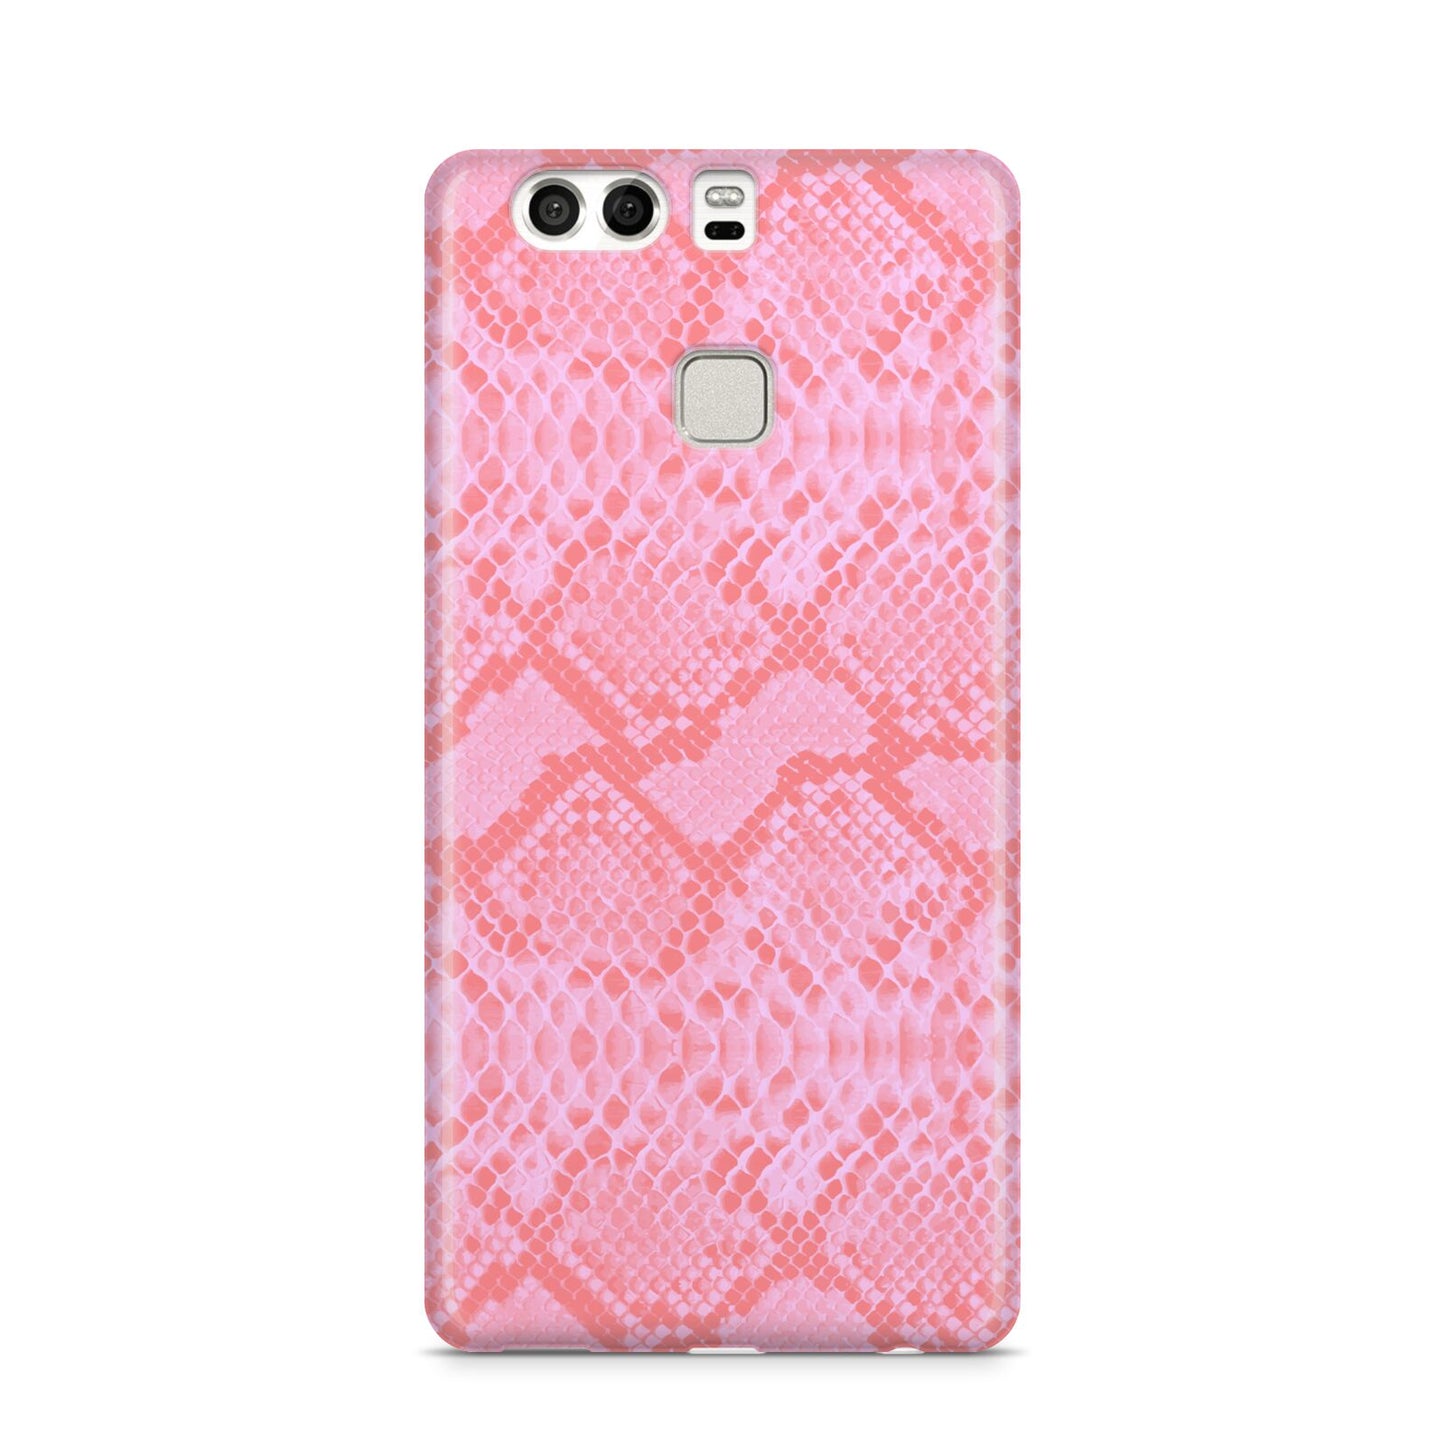 Pink Snakeskin Huawei P9 Case